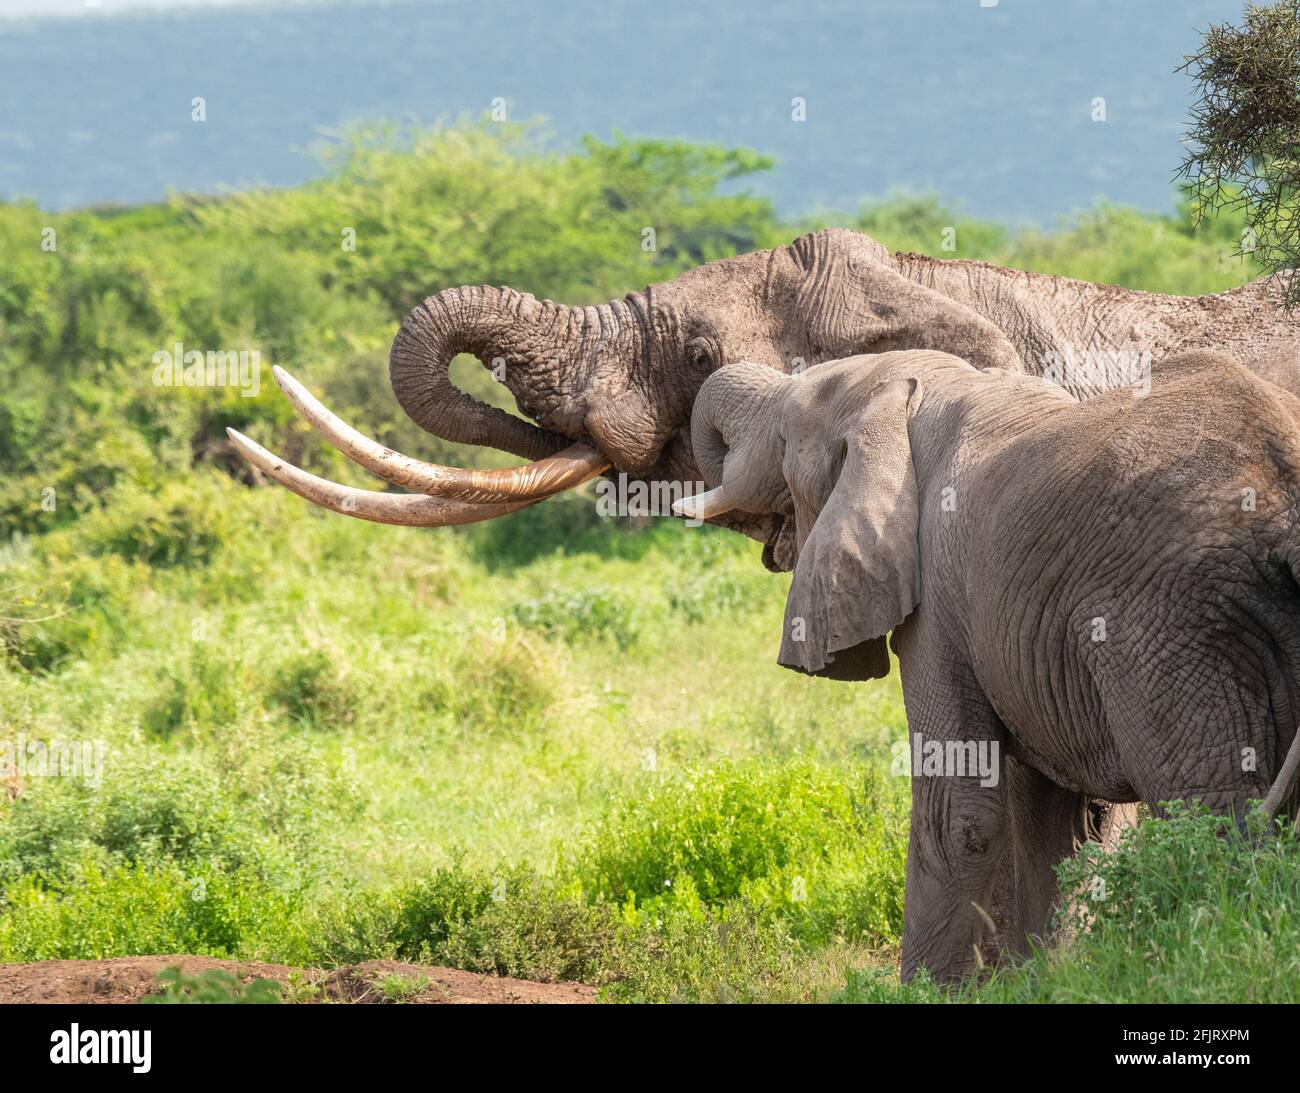 Los elefantes africanos (Loxodonta) beben agua y se bañan en un pequeño estanque en el parque nacional amboseli, Kenia, en un día soleado y con luz natural Foto de stock